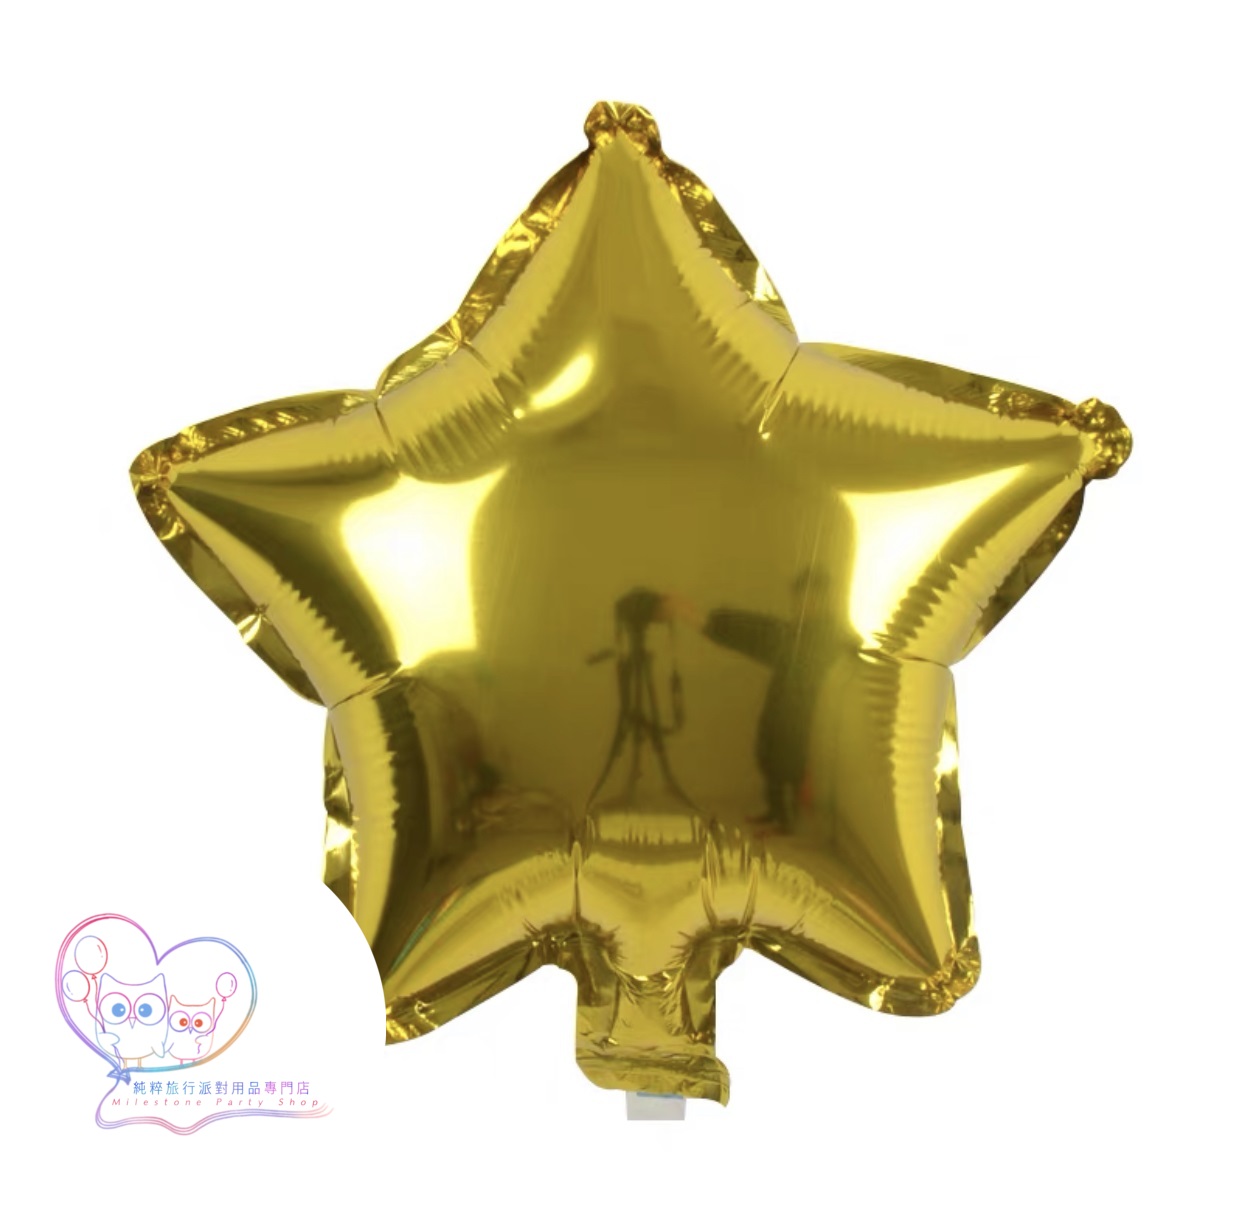 10吋星星鋁膜氣球 (金色) 10S1